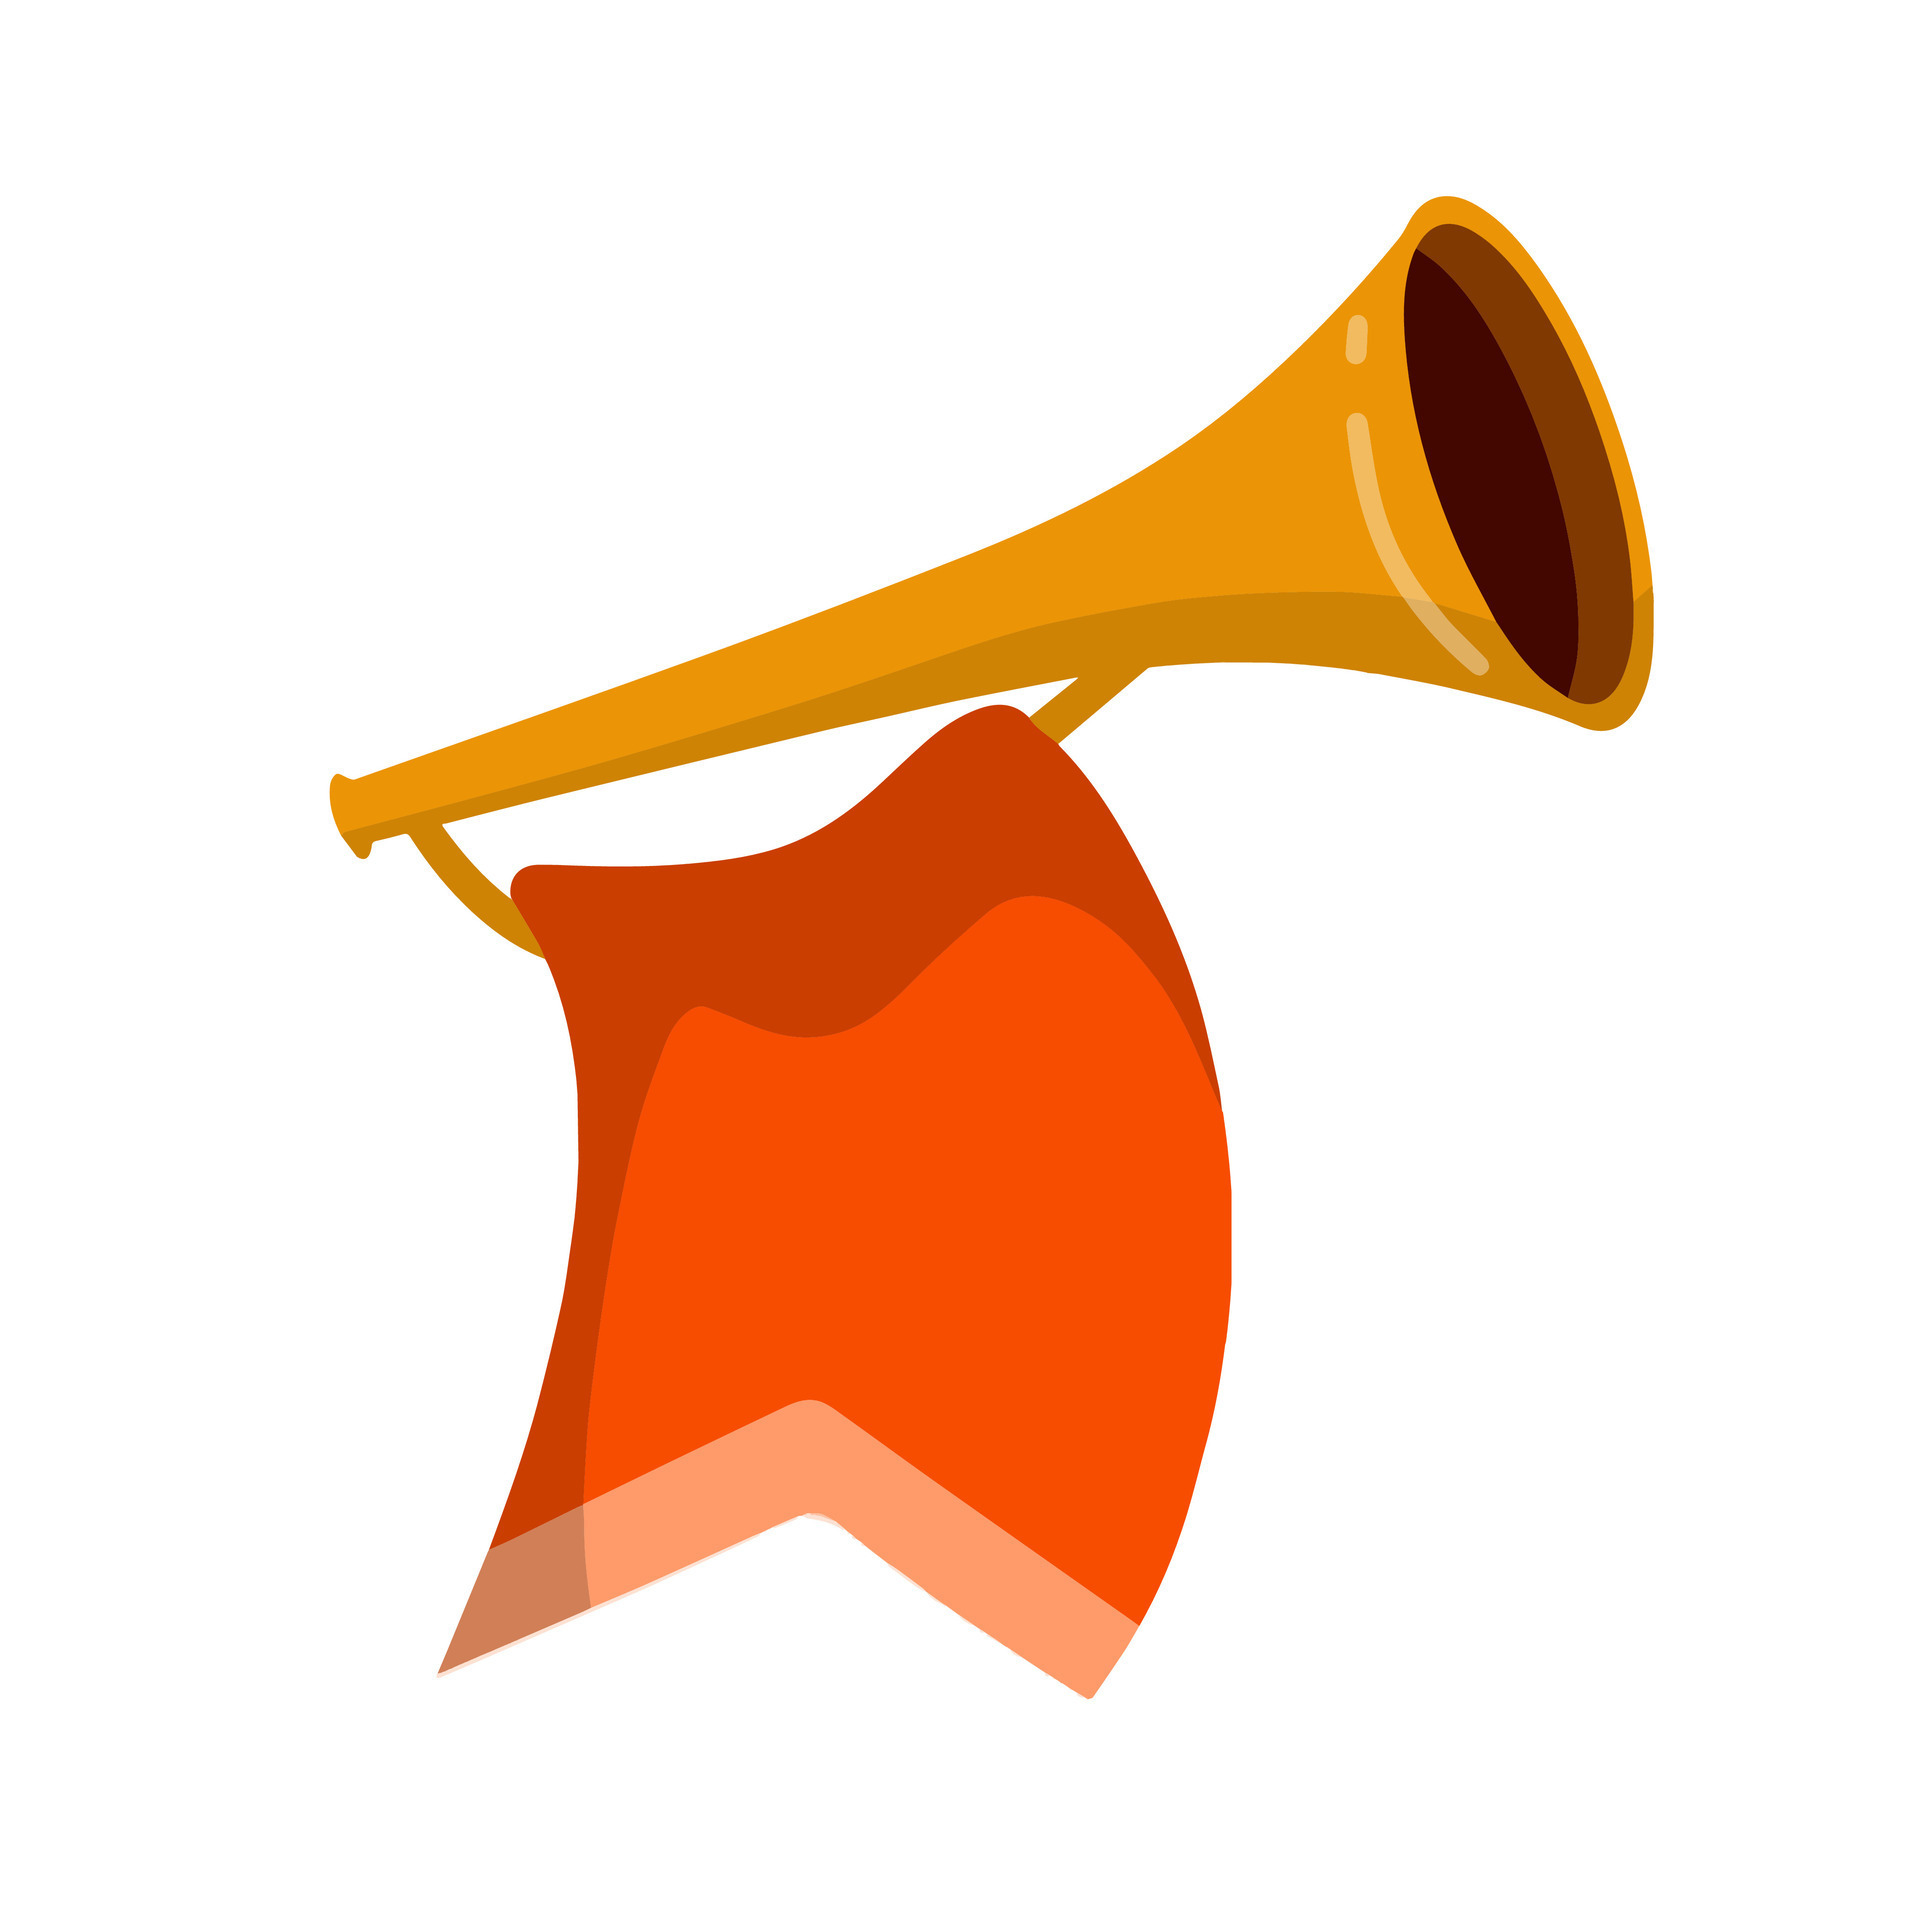 https://static.vecteezy.com/ti/gratis-vektor/p3/29774195-trompete-musical-instrument-golden-horn-mit-flagge-klang-und-melodie-eben-karikatur-illustration-feierlich-fall-element-von-feier-und-auszeichnungen-vektor.jpg